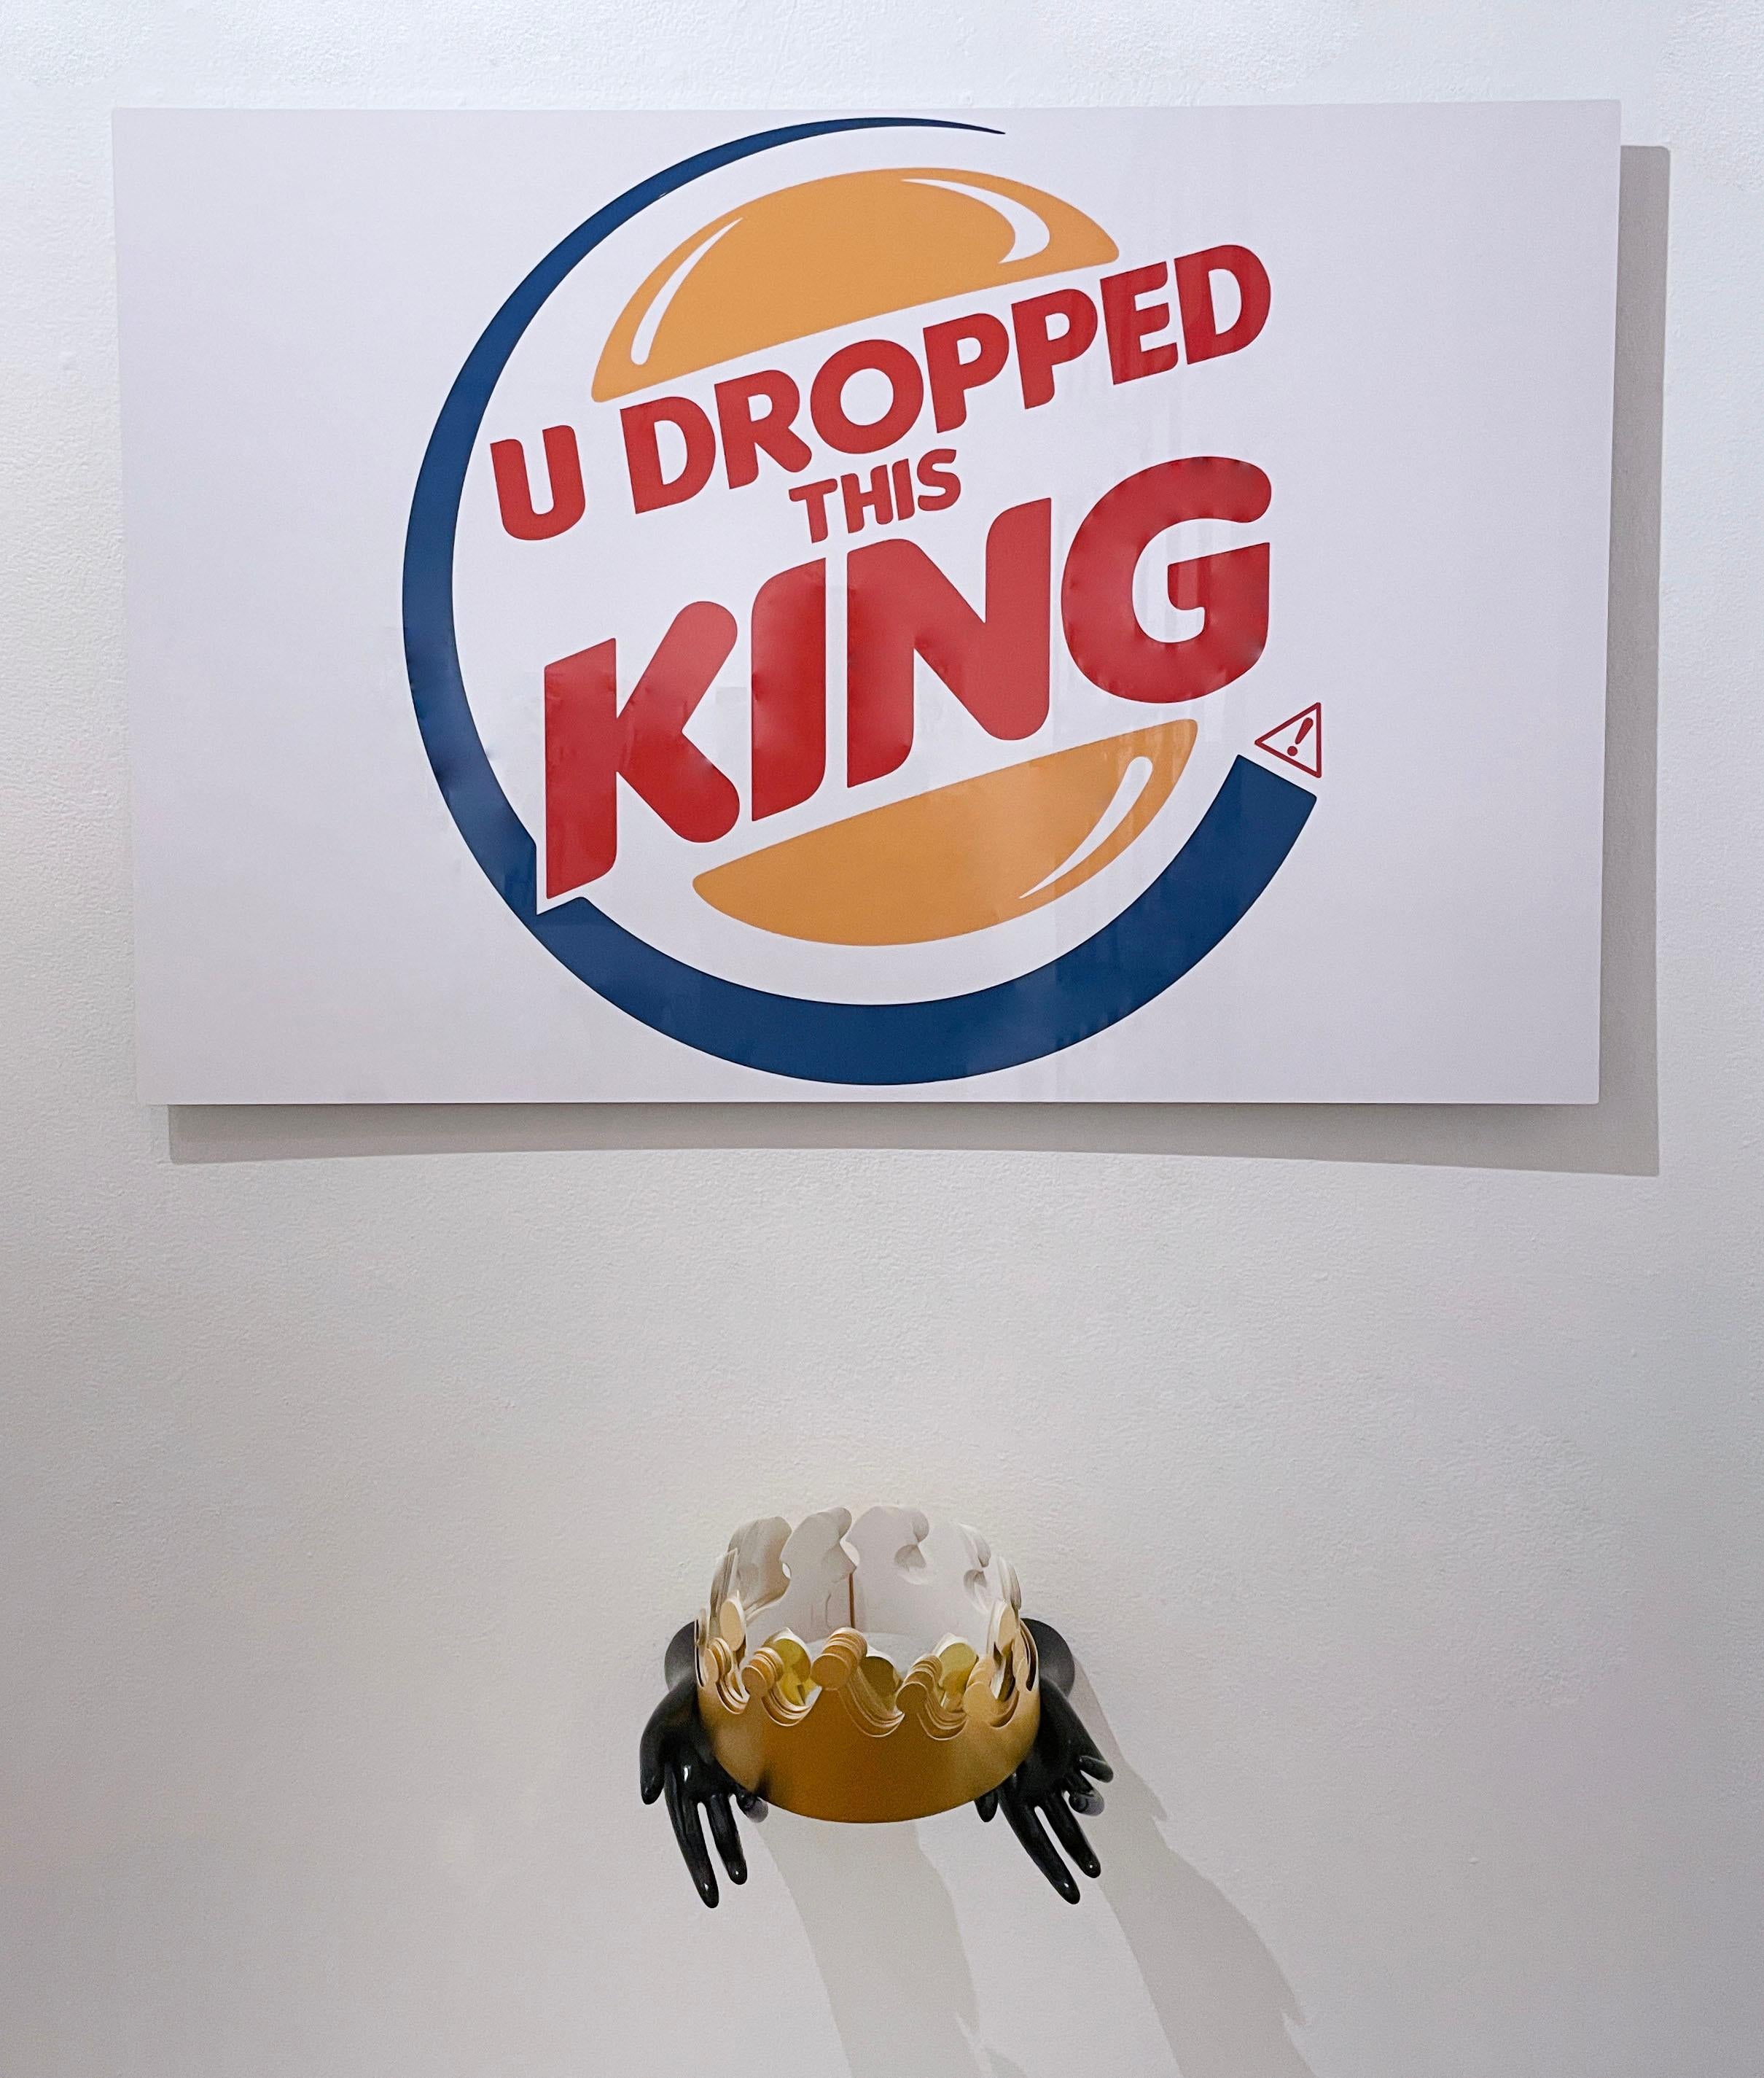 "U Dropped This King" (2022) von Straßenkünstler Kid Hazo
24 x 36 x .75"
Mit Puppenhänden und Papierkrone (9,5 x 10,5 x 9")

Archivtinte auf Aluminium. Zeichenkunst, Satire, Text, Anspielung auf das Burger King-Logo. Rot, gelb, blau und weiß.